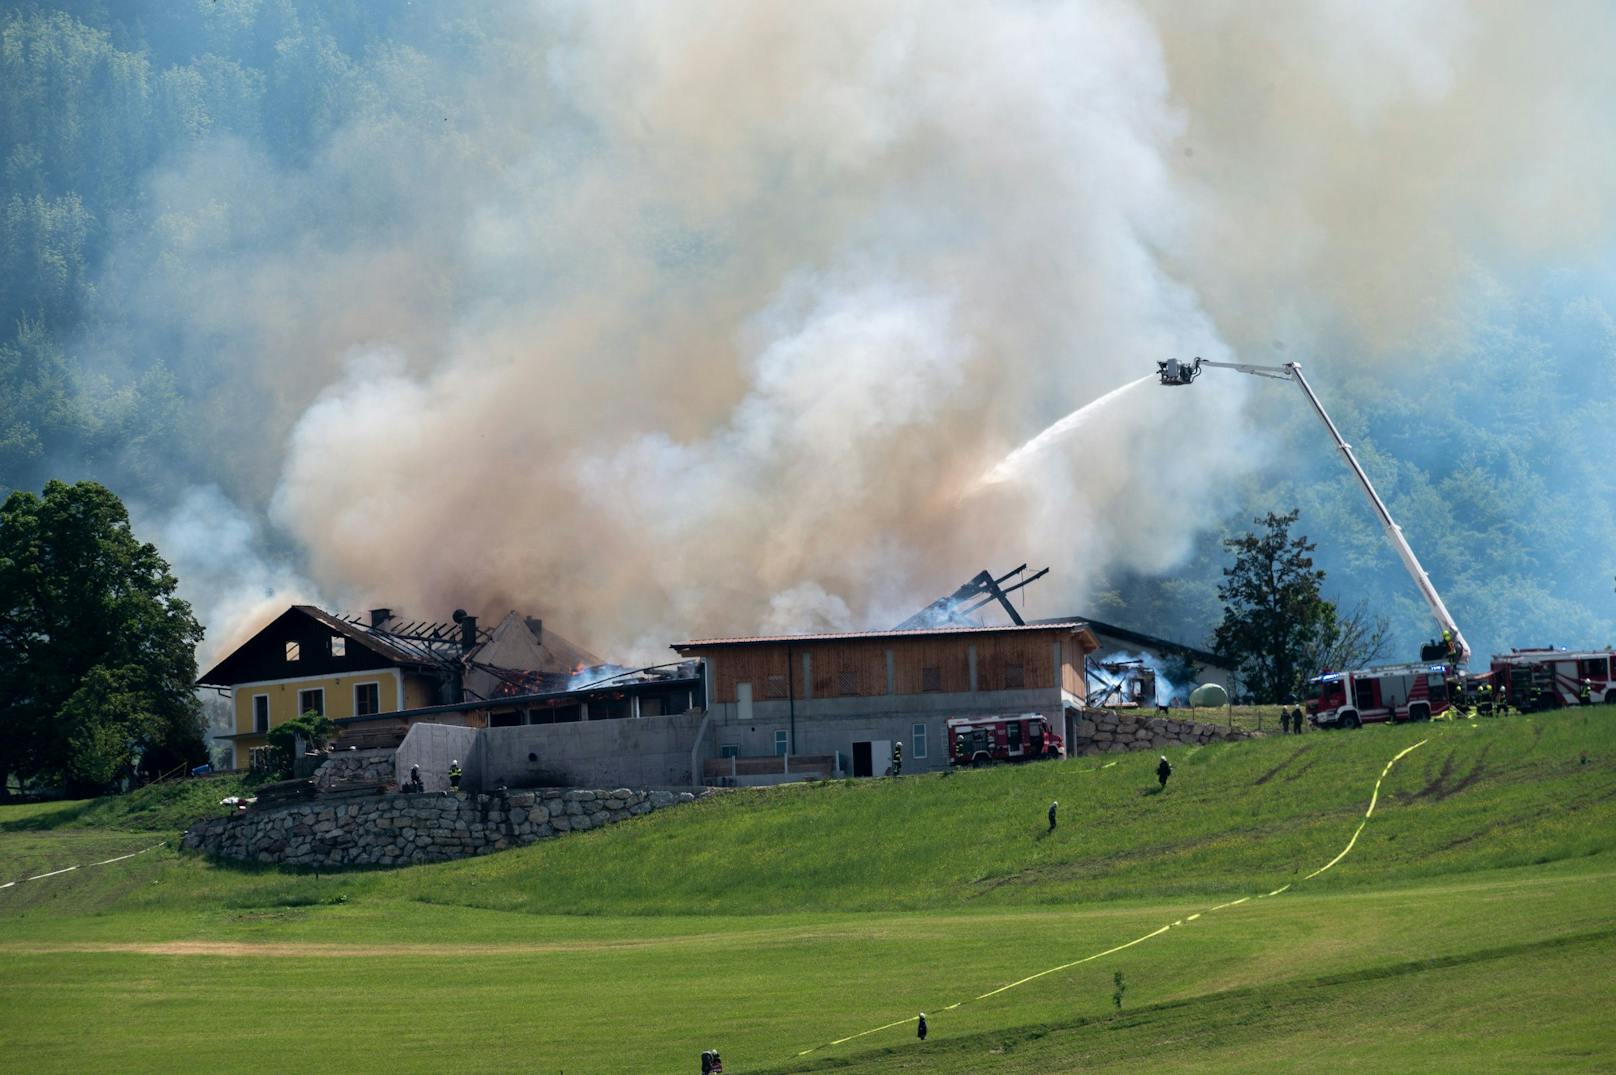 17 Feuerwehren kämpfen gegen Großbrand auf Bauernhof